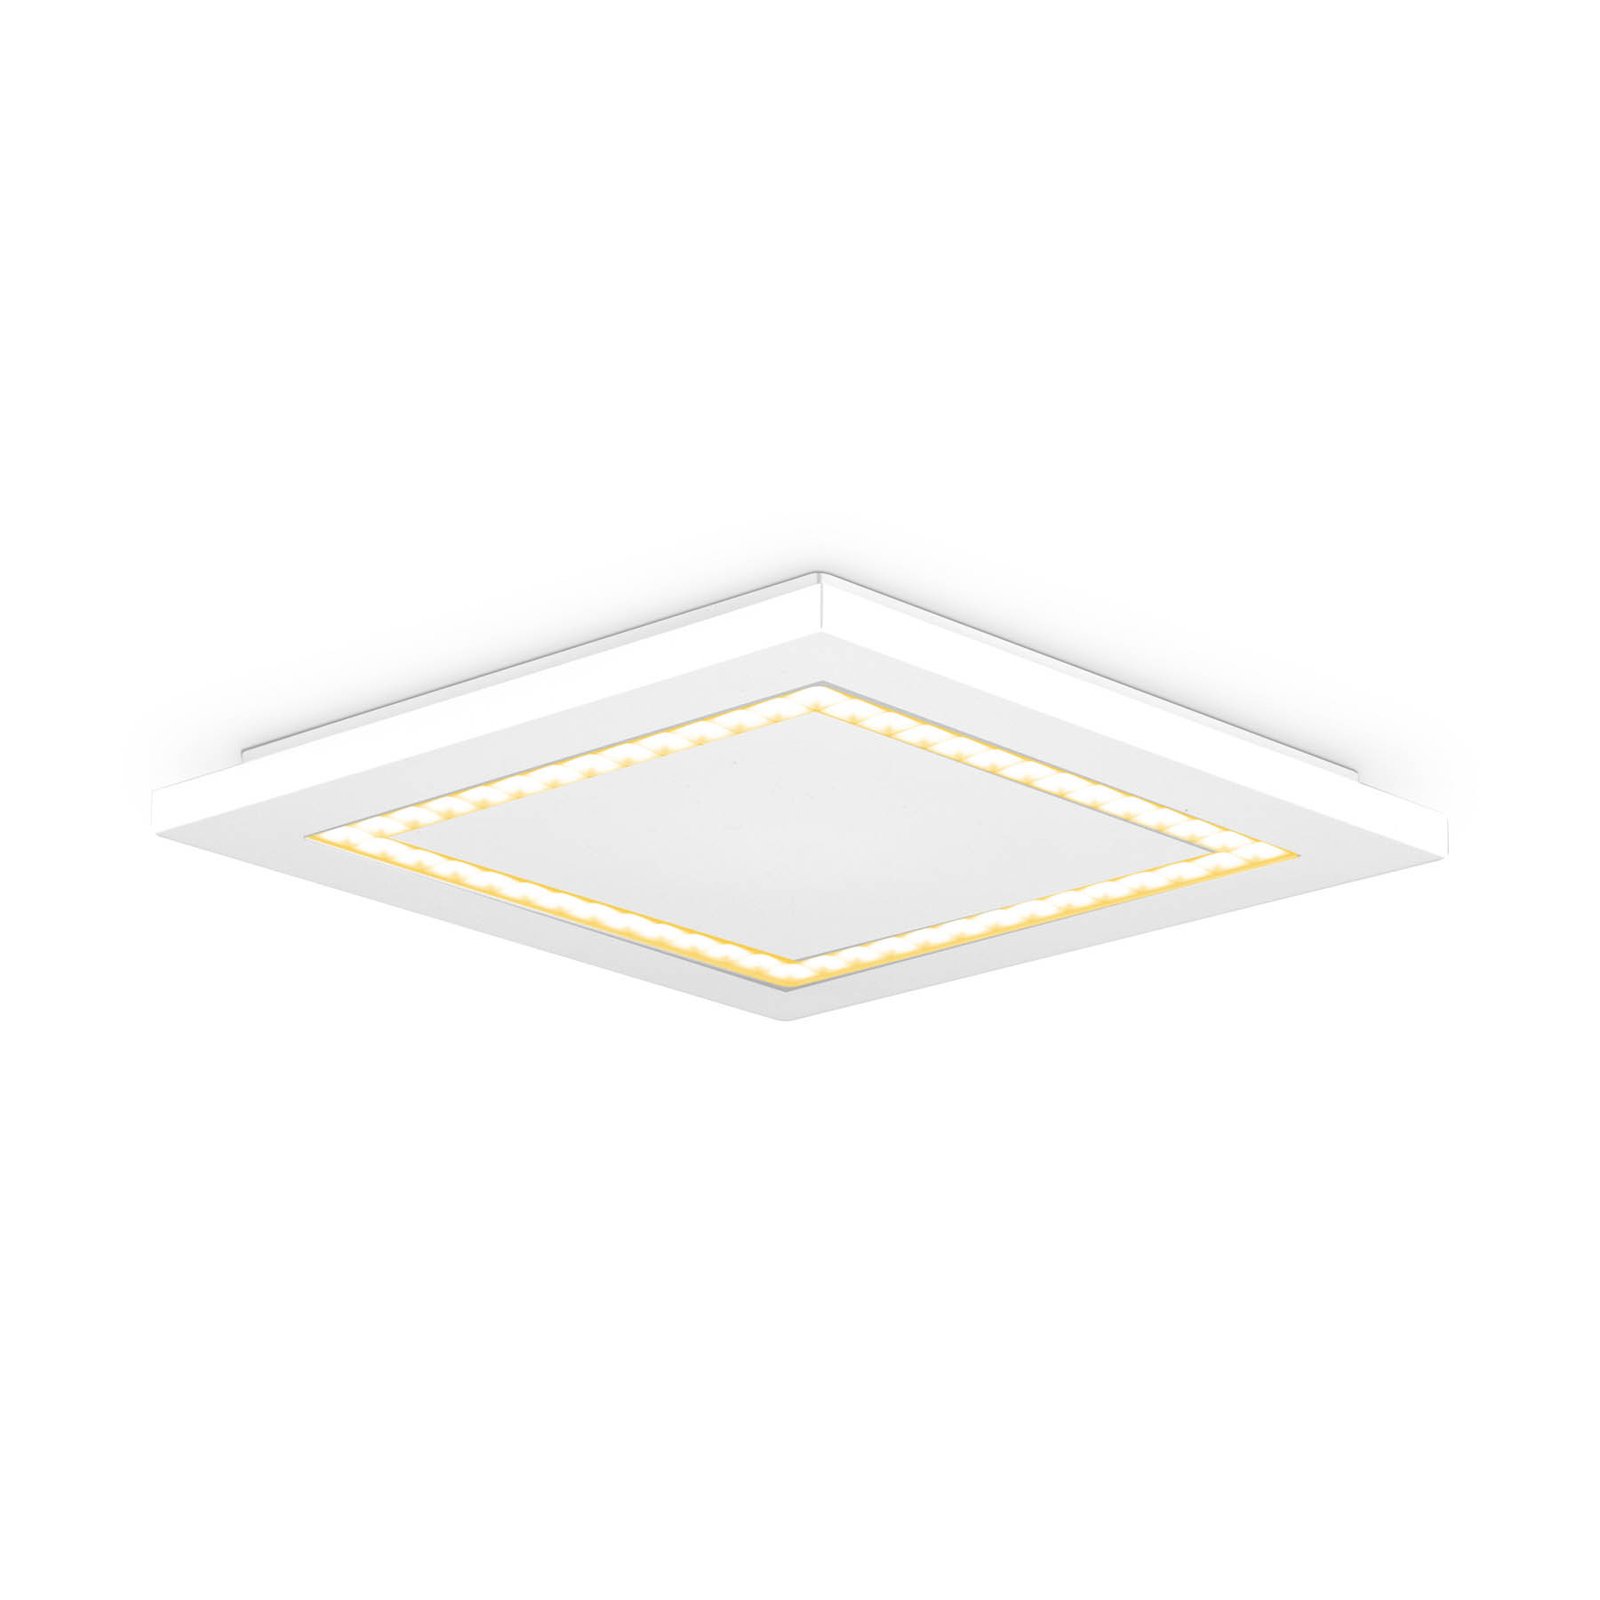 EVN ALQ pannello LED bianco 15W 30x30cm 4.000K